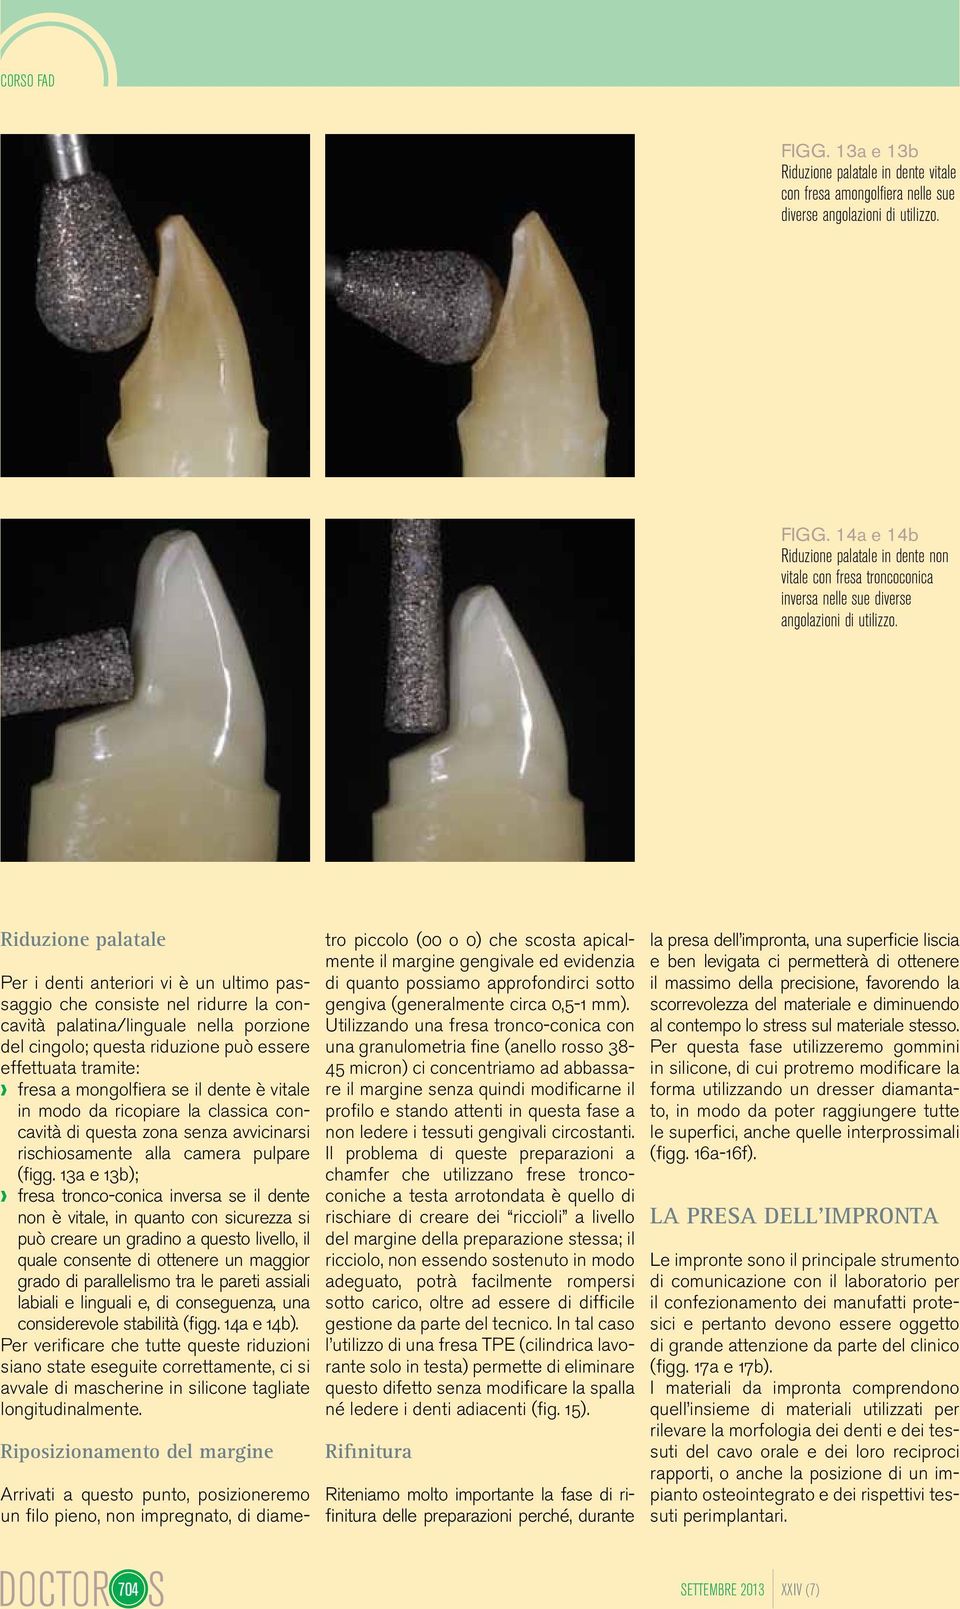 fresa a mongolfiera se il dente è vitale in modo da ricopiare la classica concavità di questa zona senza avvicinarsi rischiosamente alla camera pulpare (figg.